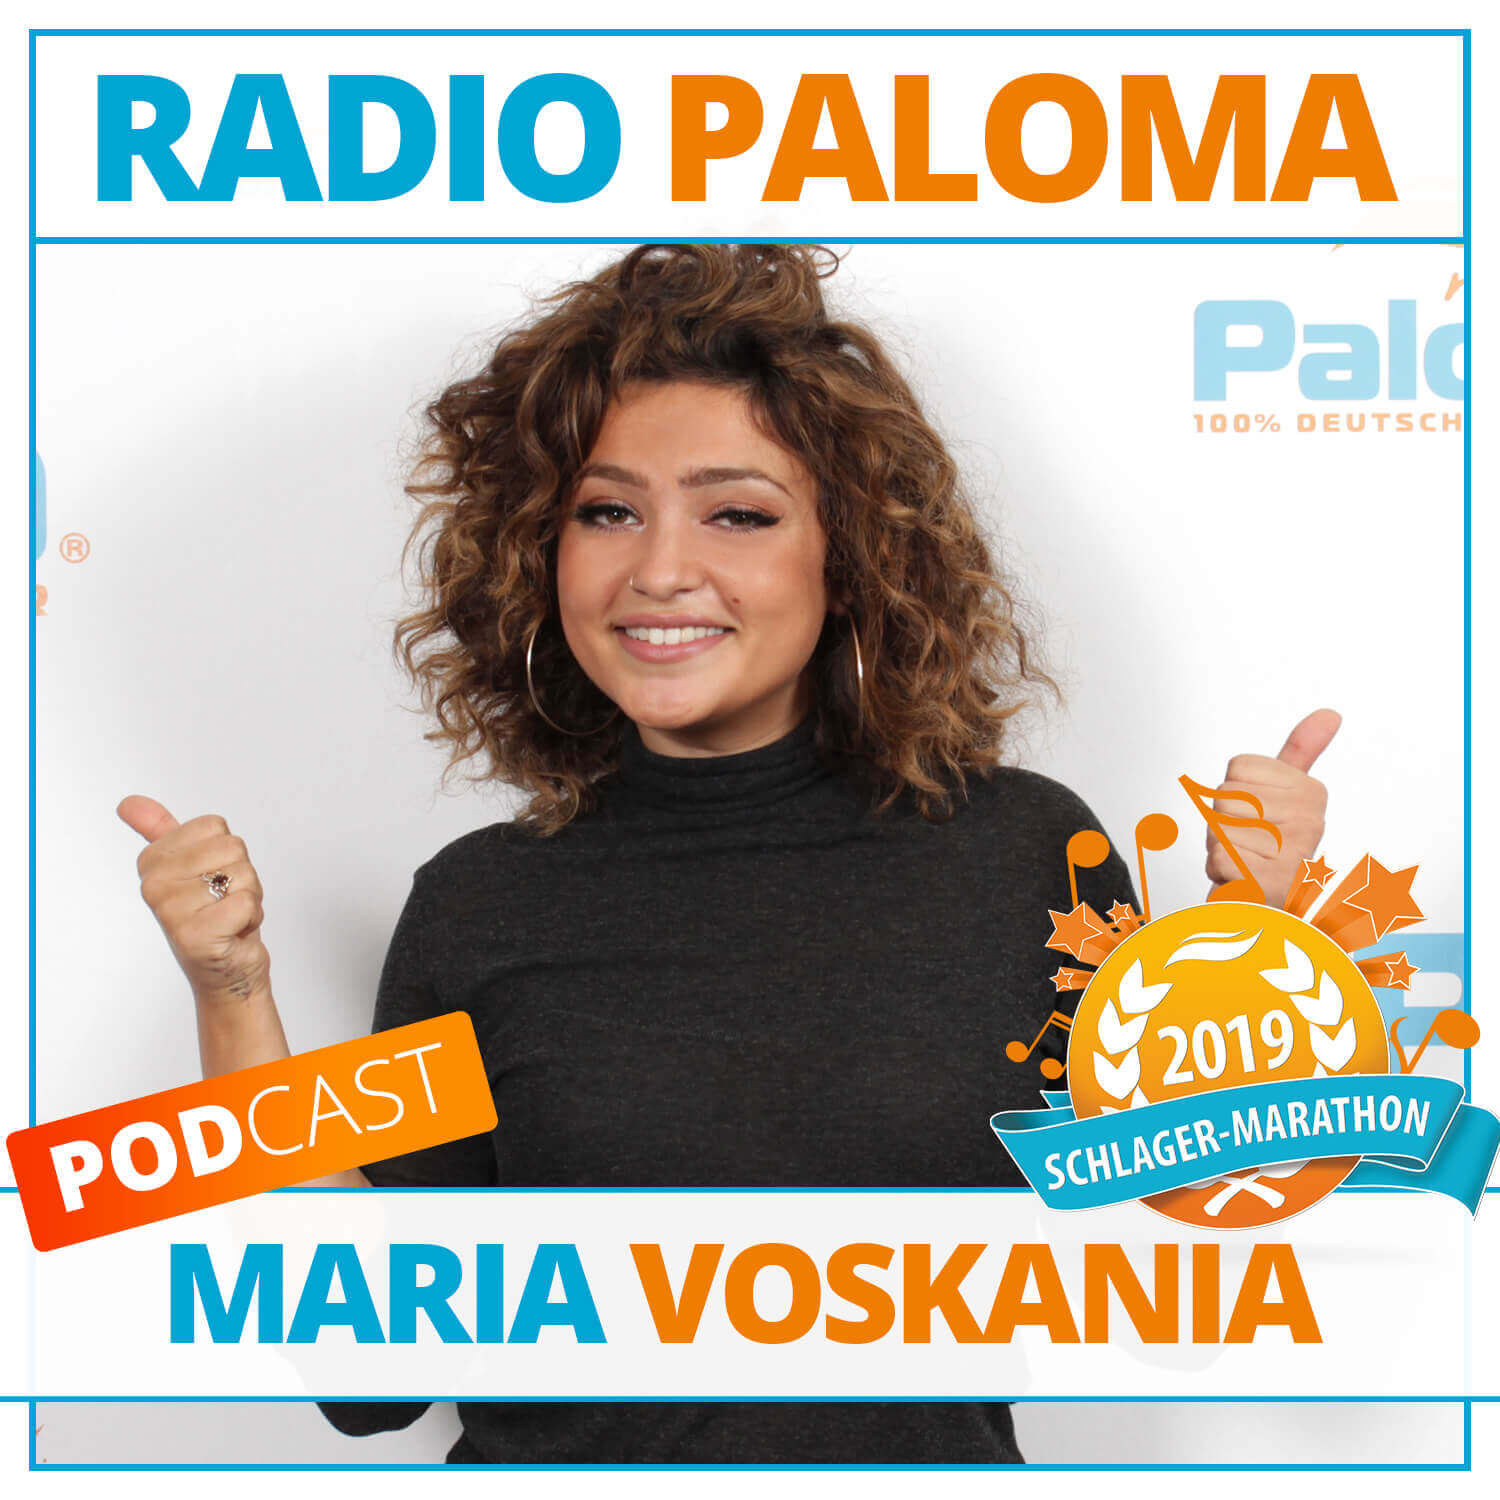 Der Radio Paloma Schlager-Marathon 2019 mit Maria Voskania